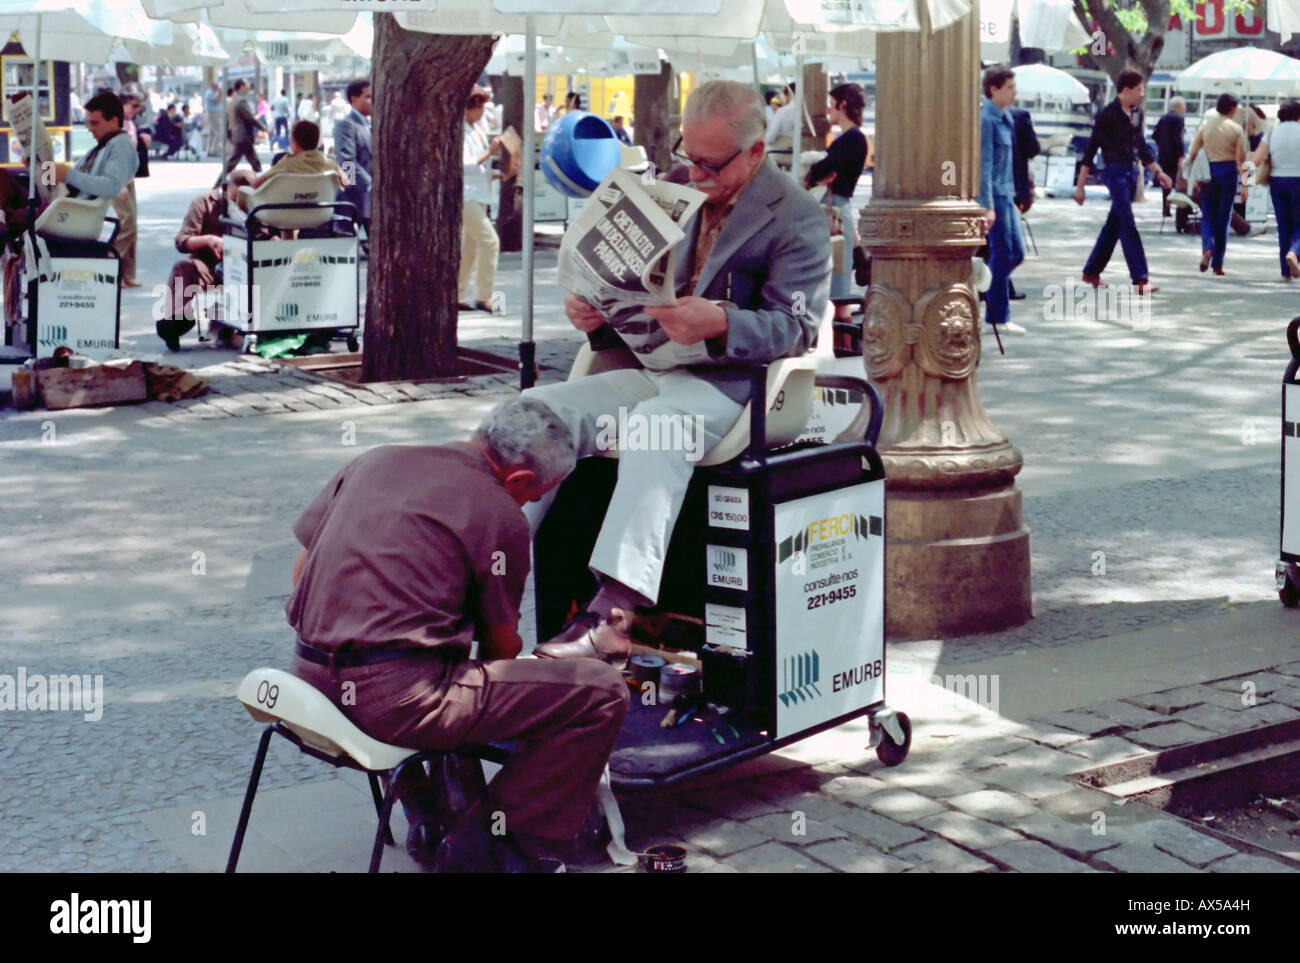 Una scena cittadina del quotidiano, le attività di tutti i giorni nella trafficata metropoli sudamericana di Sao Paulo, Brasile nei primi anni ottanta. Foto Stock